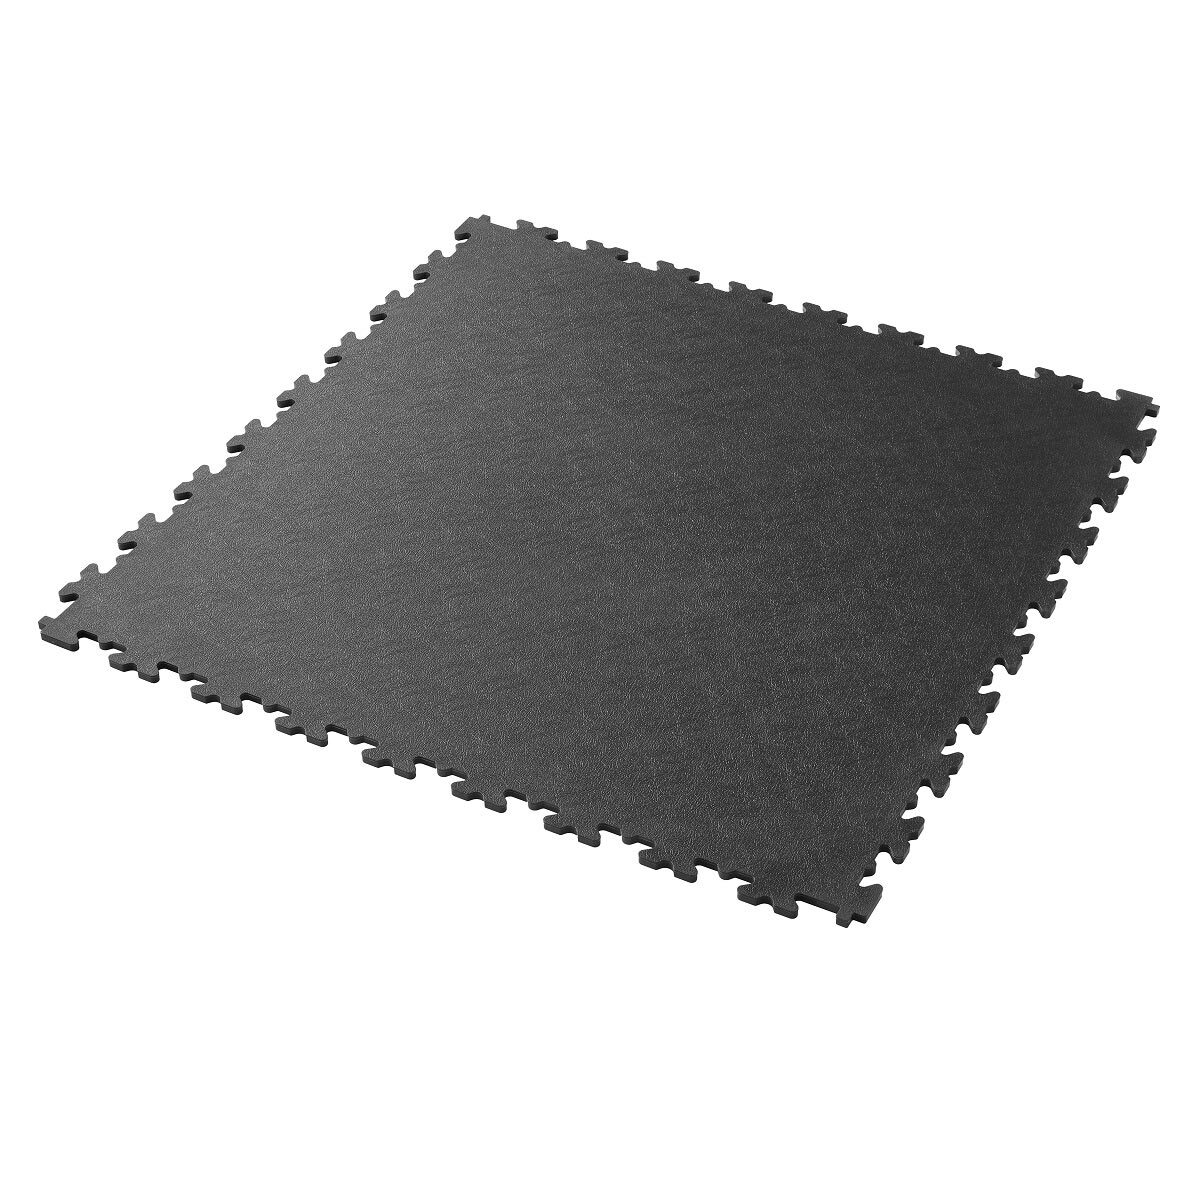 Klikflor X500 Garage Floor Tiles (496 x 496 x 7mm) - 4 Pack